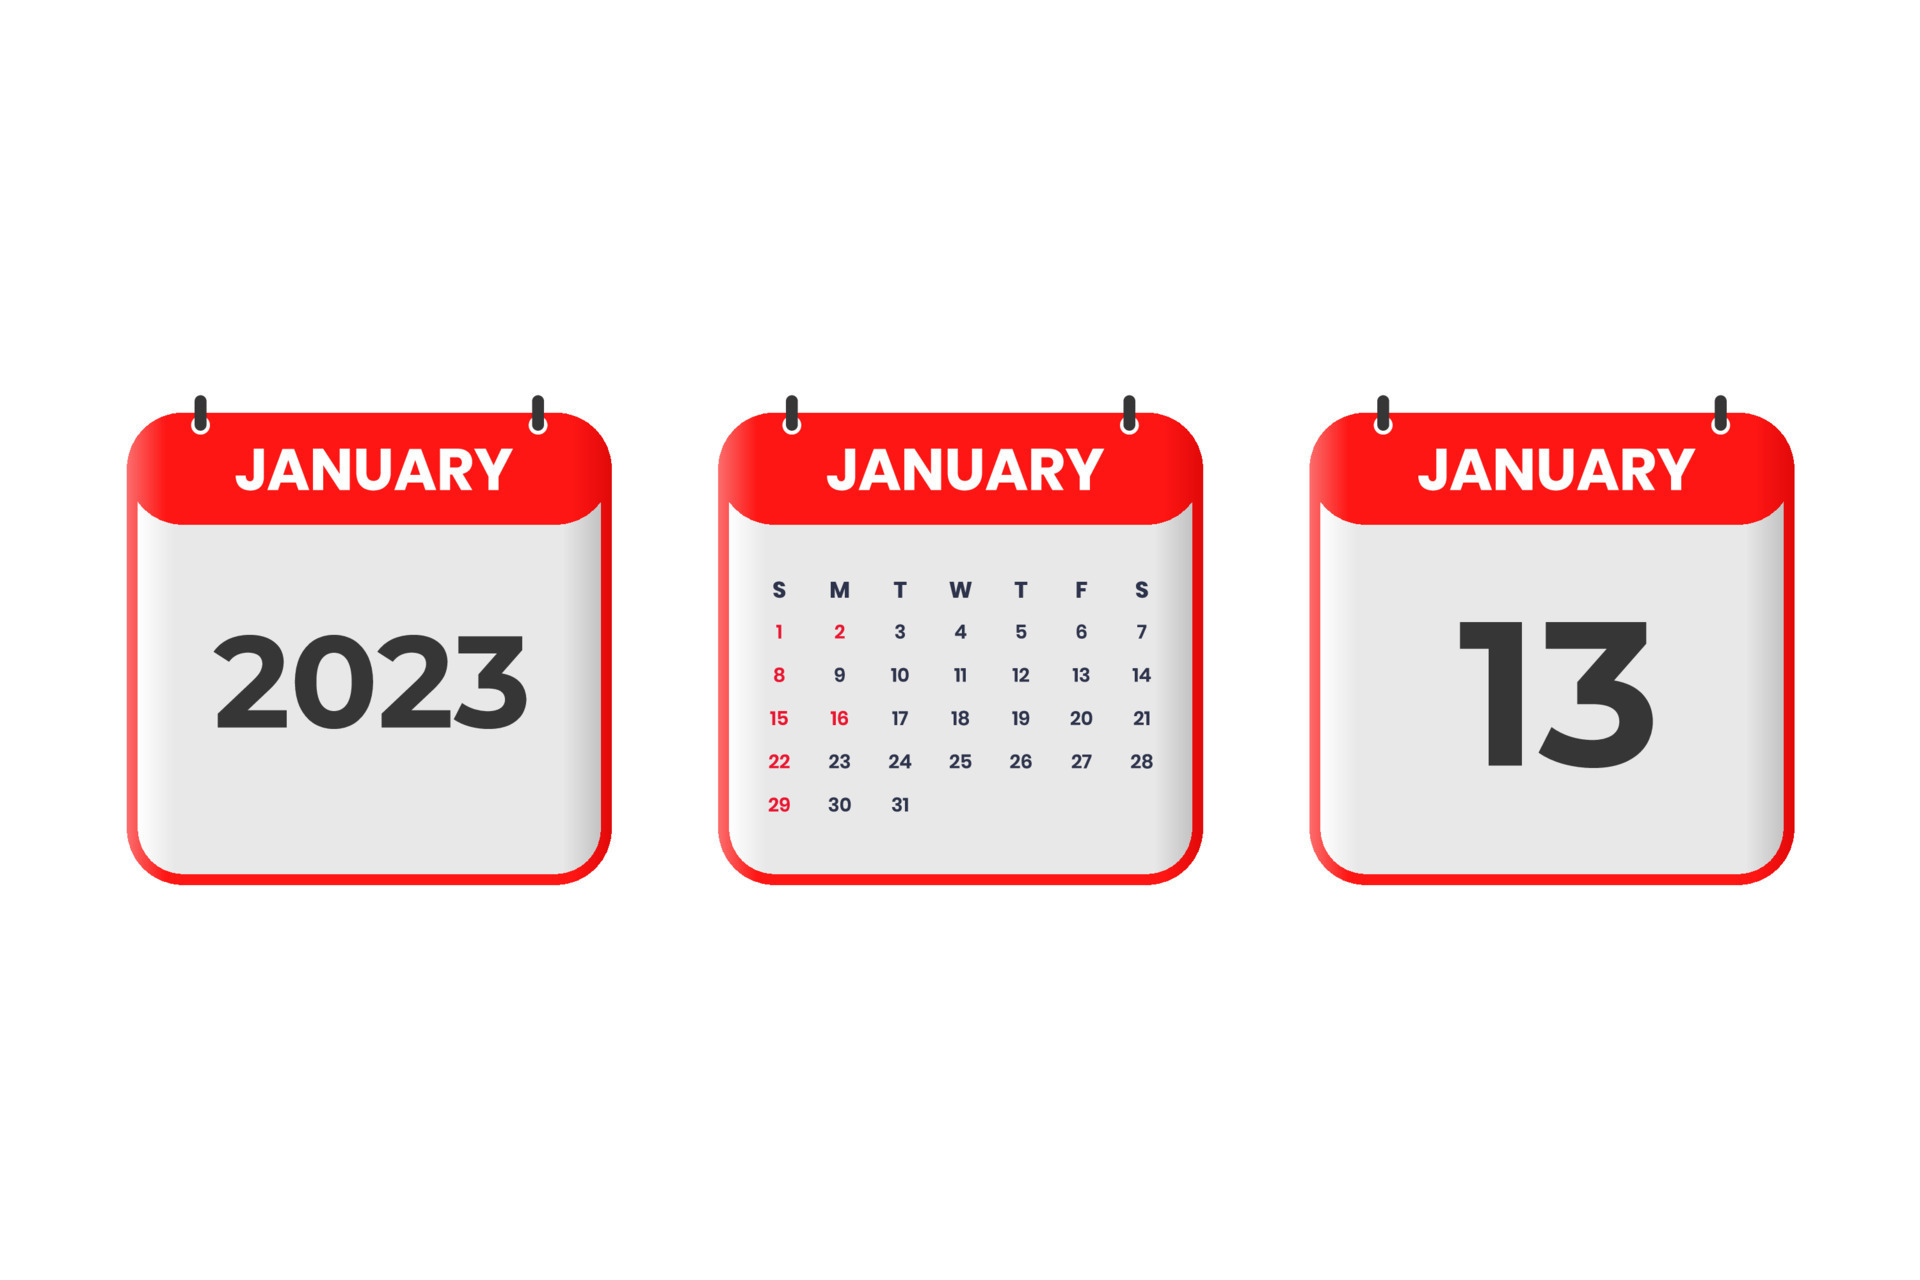 January 2023 calendar design. 13th January 2023 calendar icon for